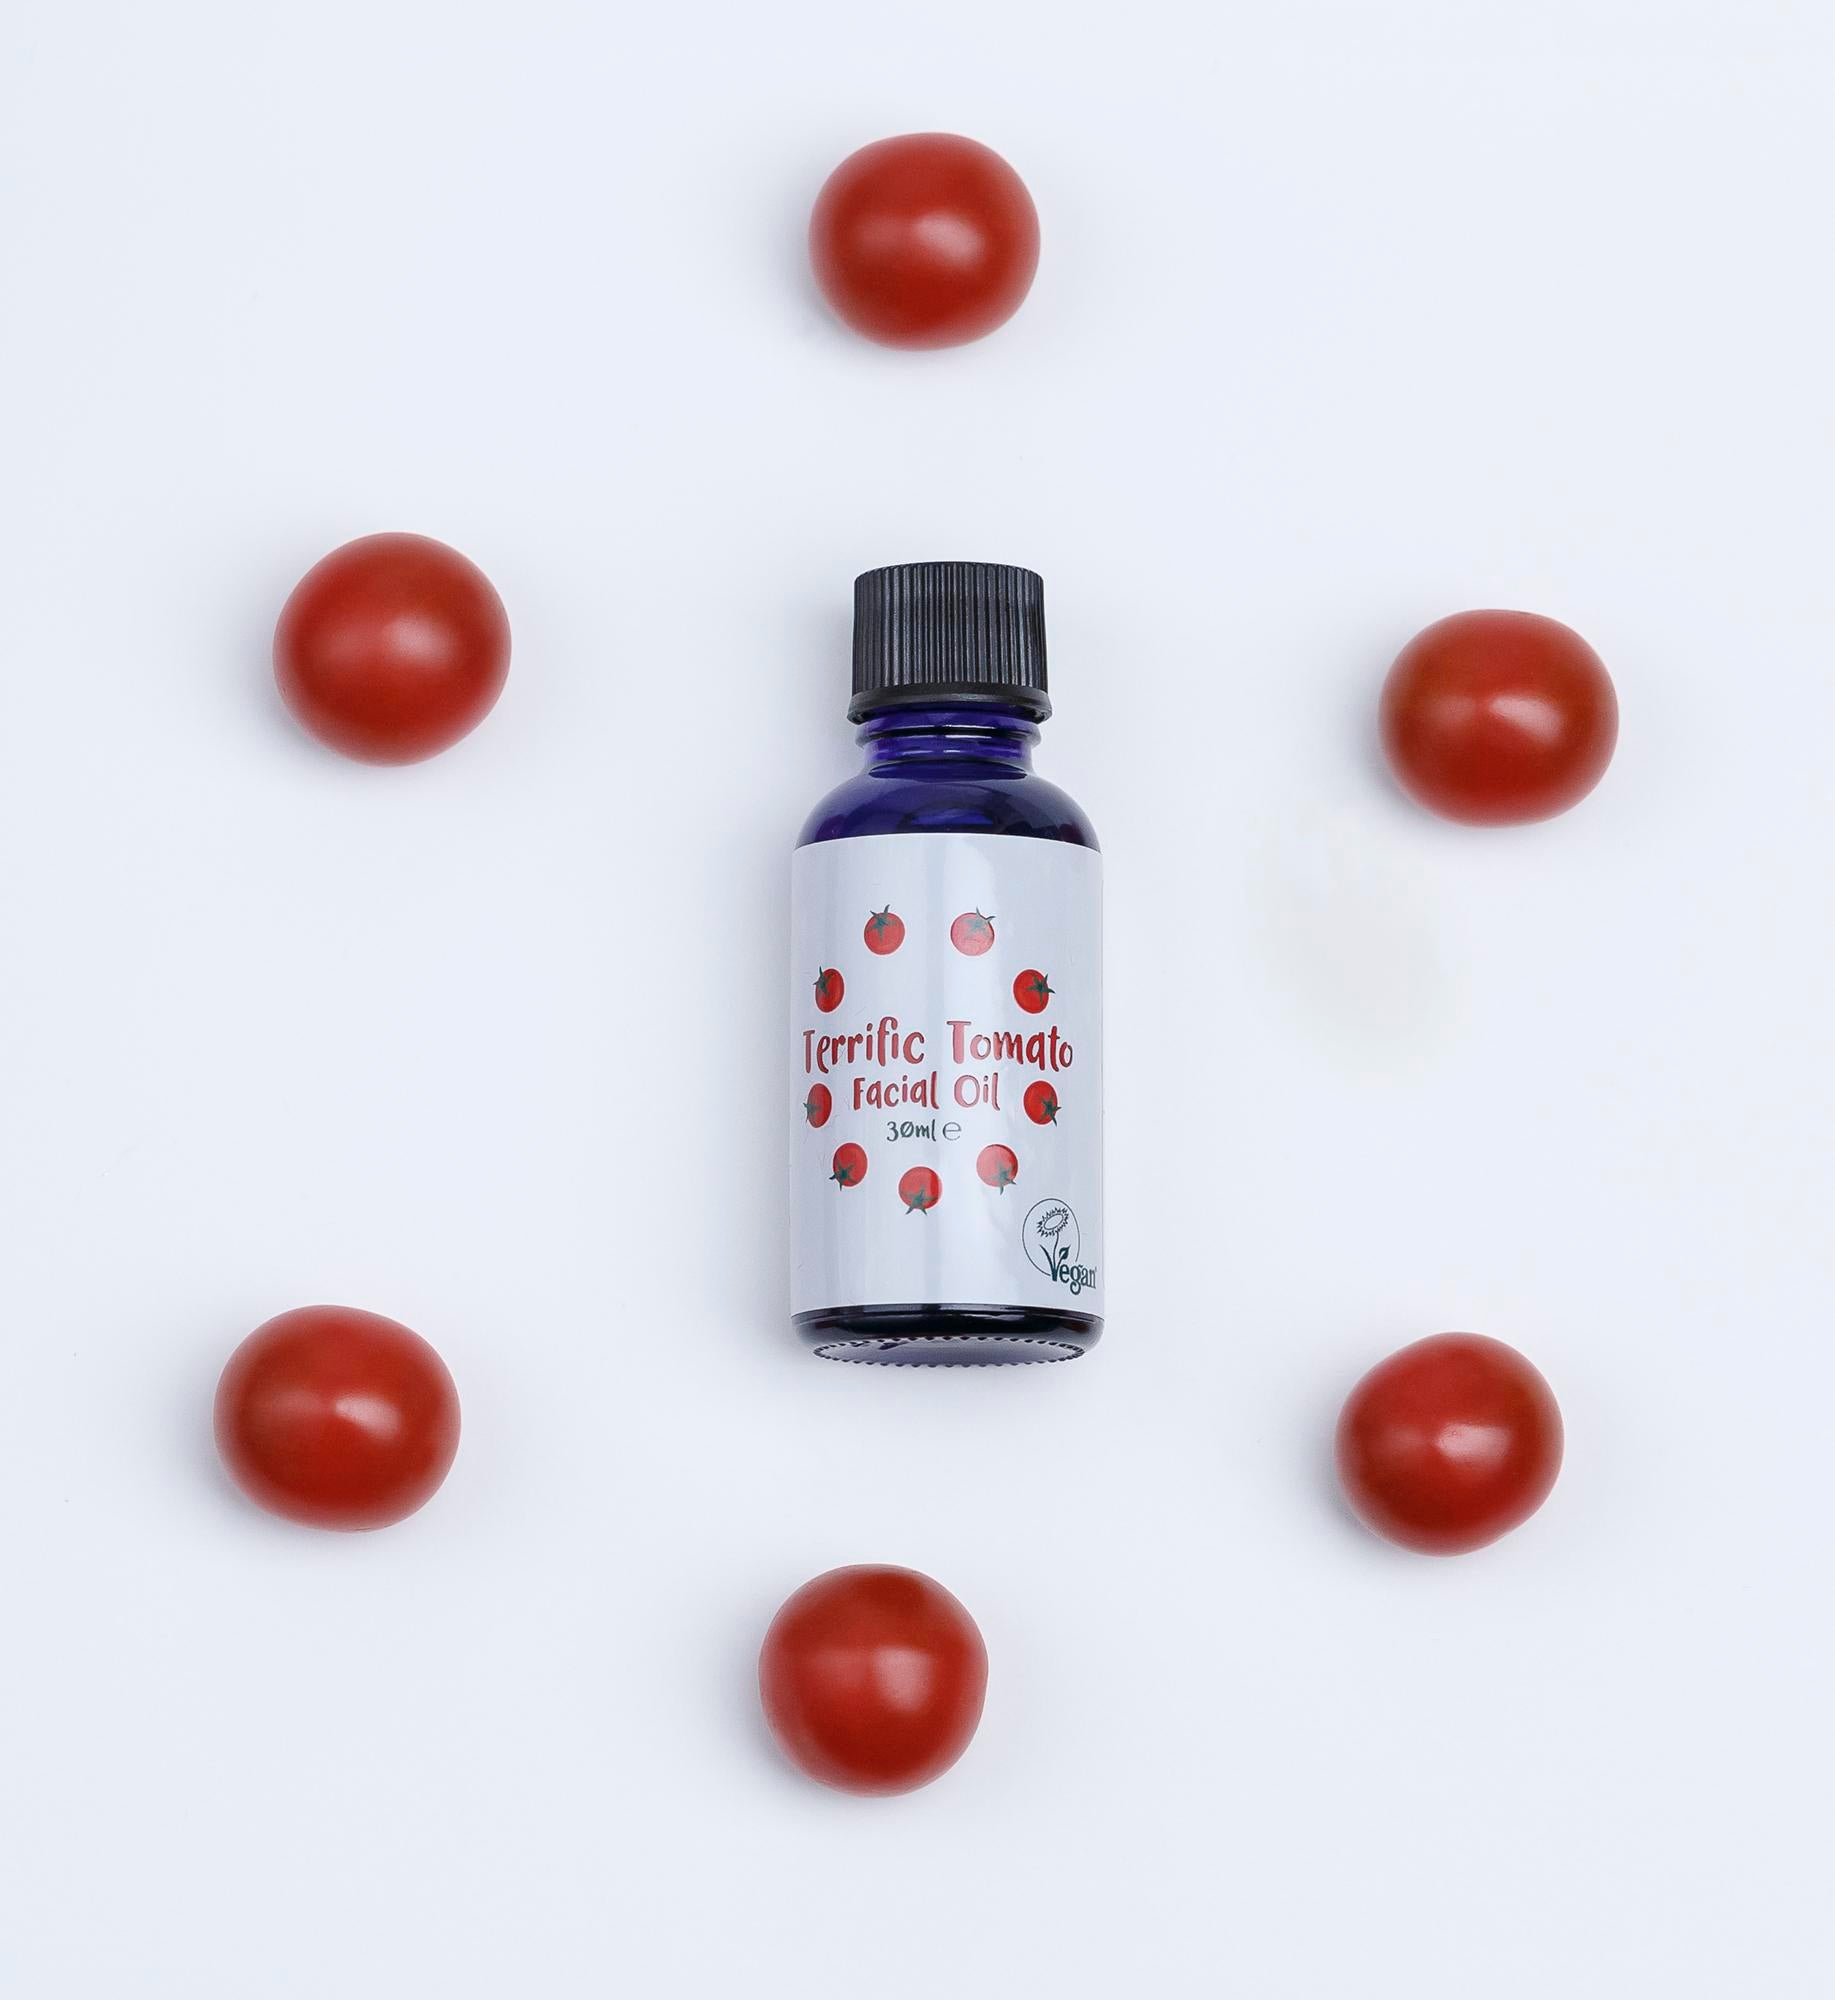 Terrific Tomato facial oil with tomato seed oil